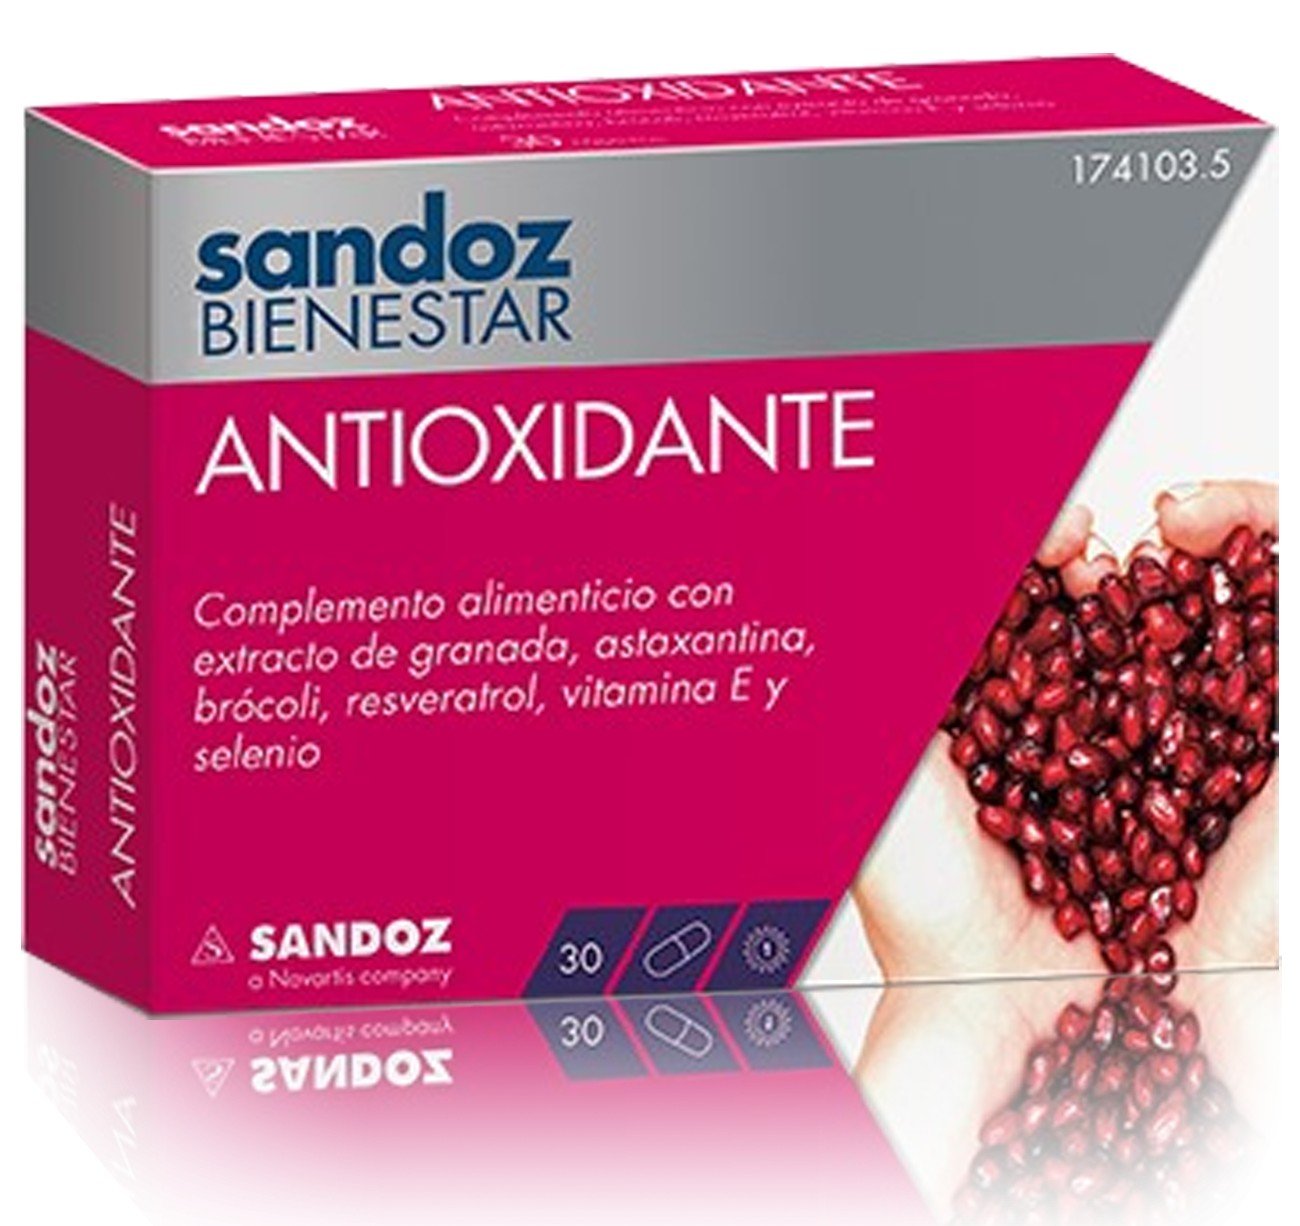 Sandoz Bienestar Antioxidante, 30 Cápsulas